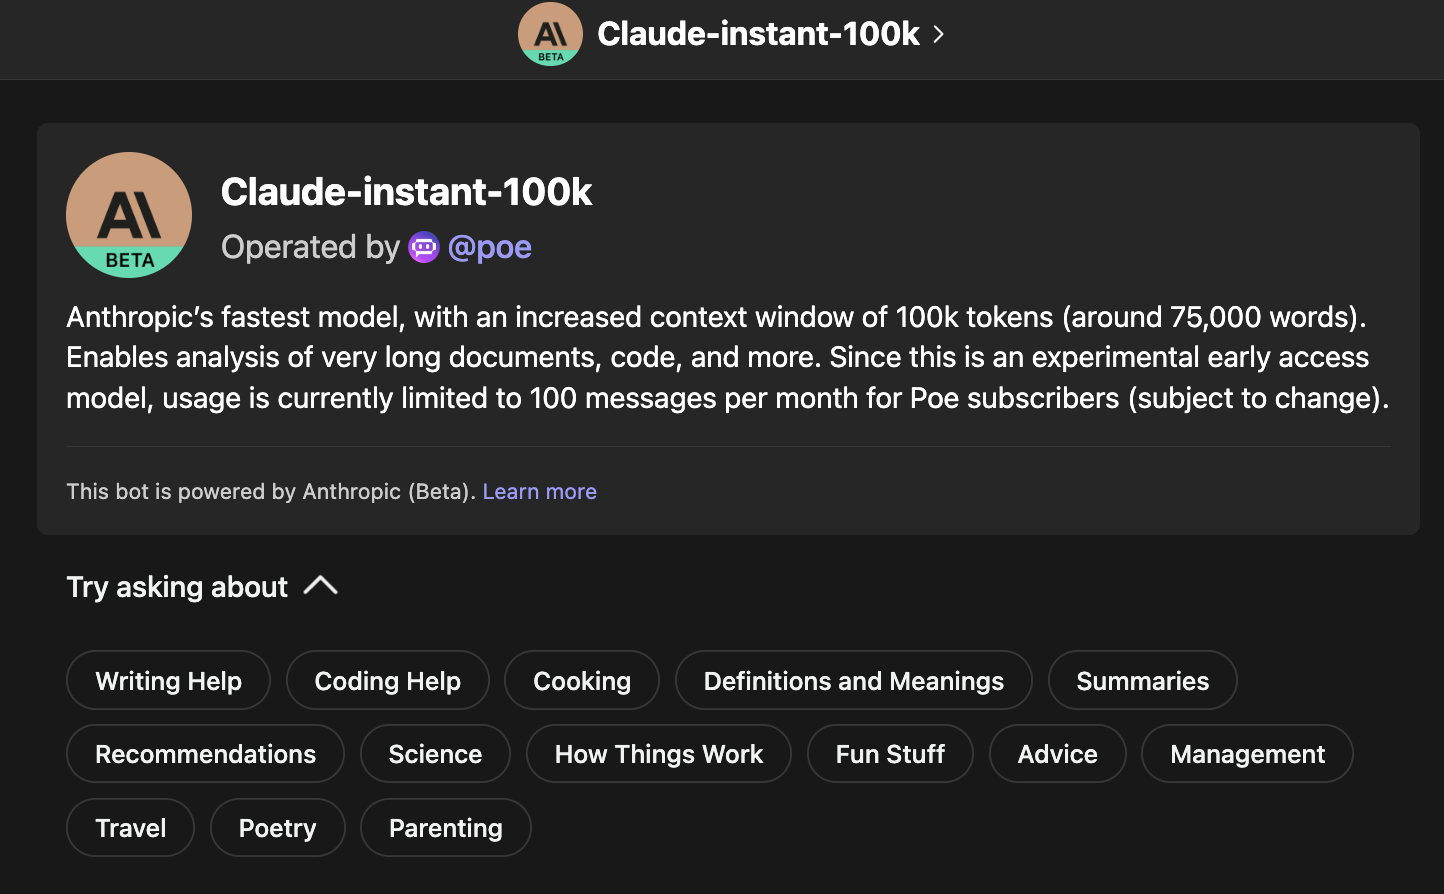 claude-instant-100k details